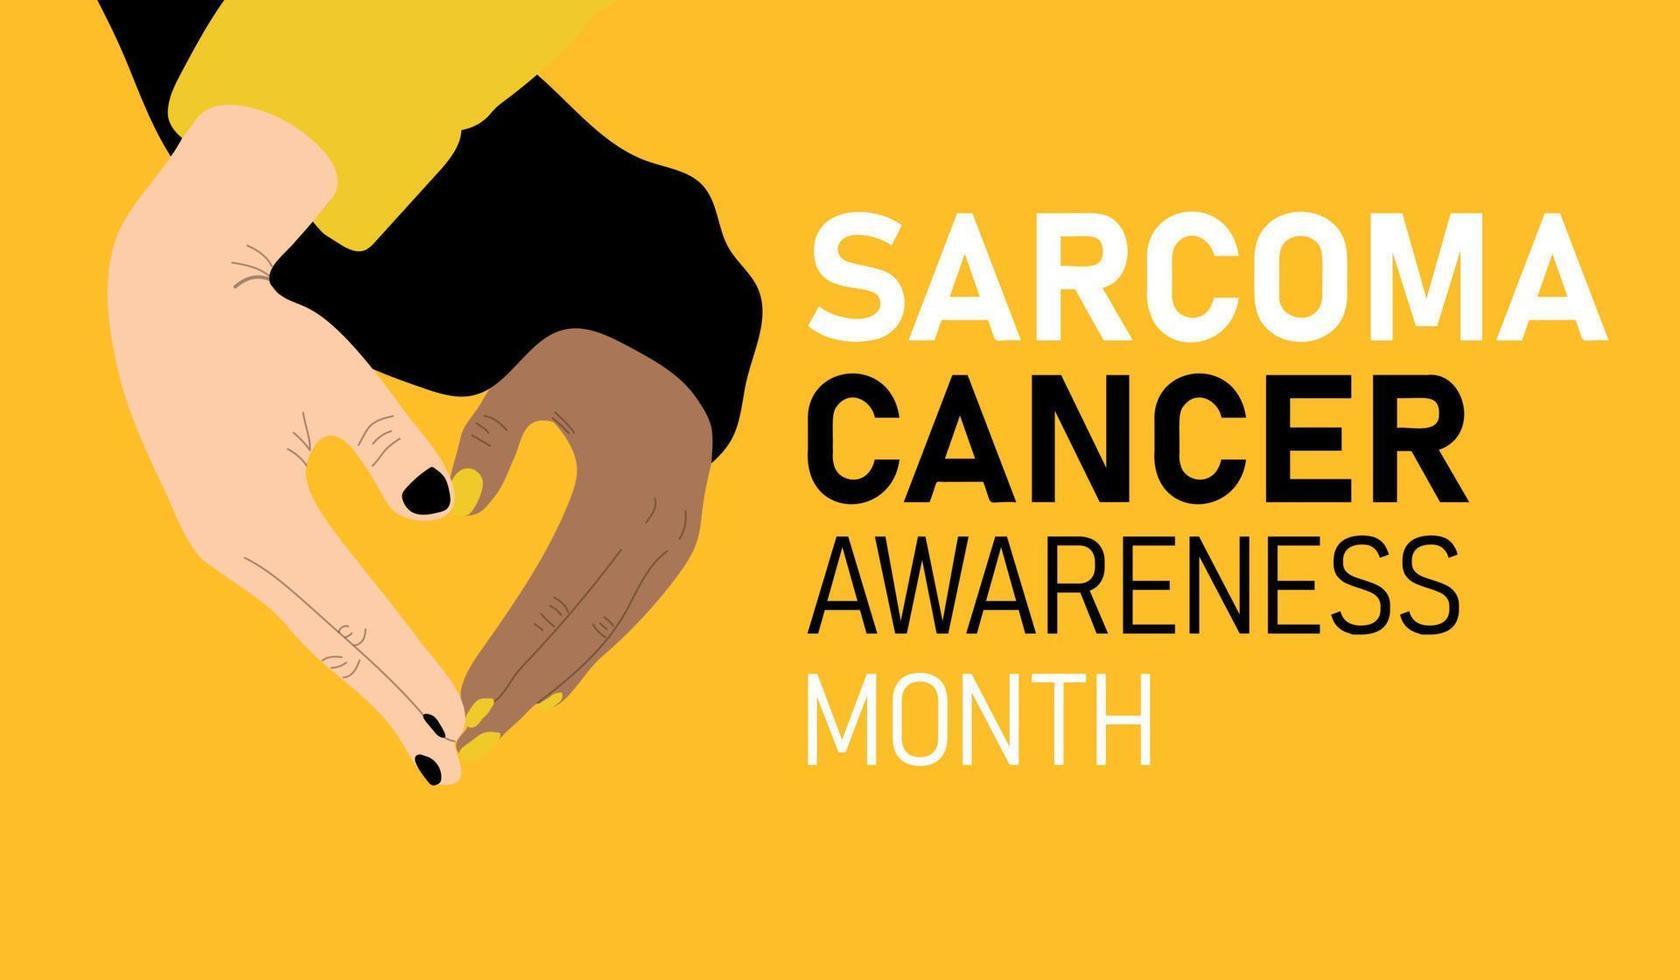 mese di sensibilizzazione sul cancro del sarcoma vettore